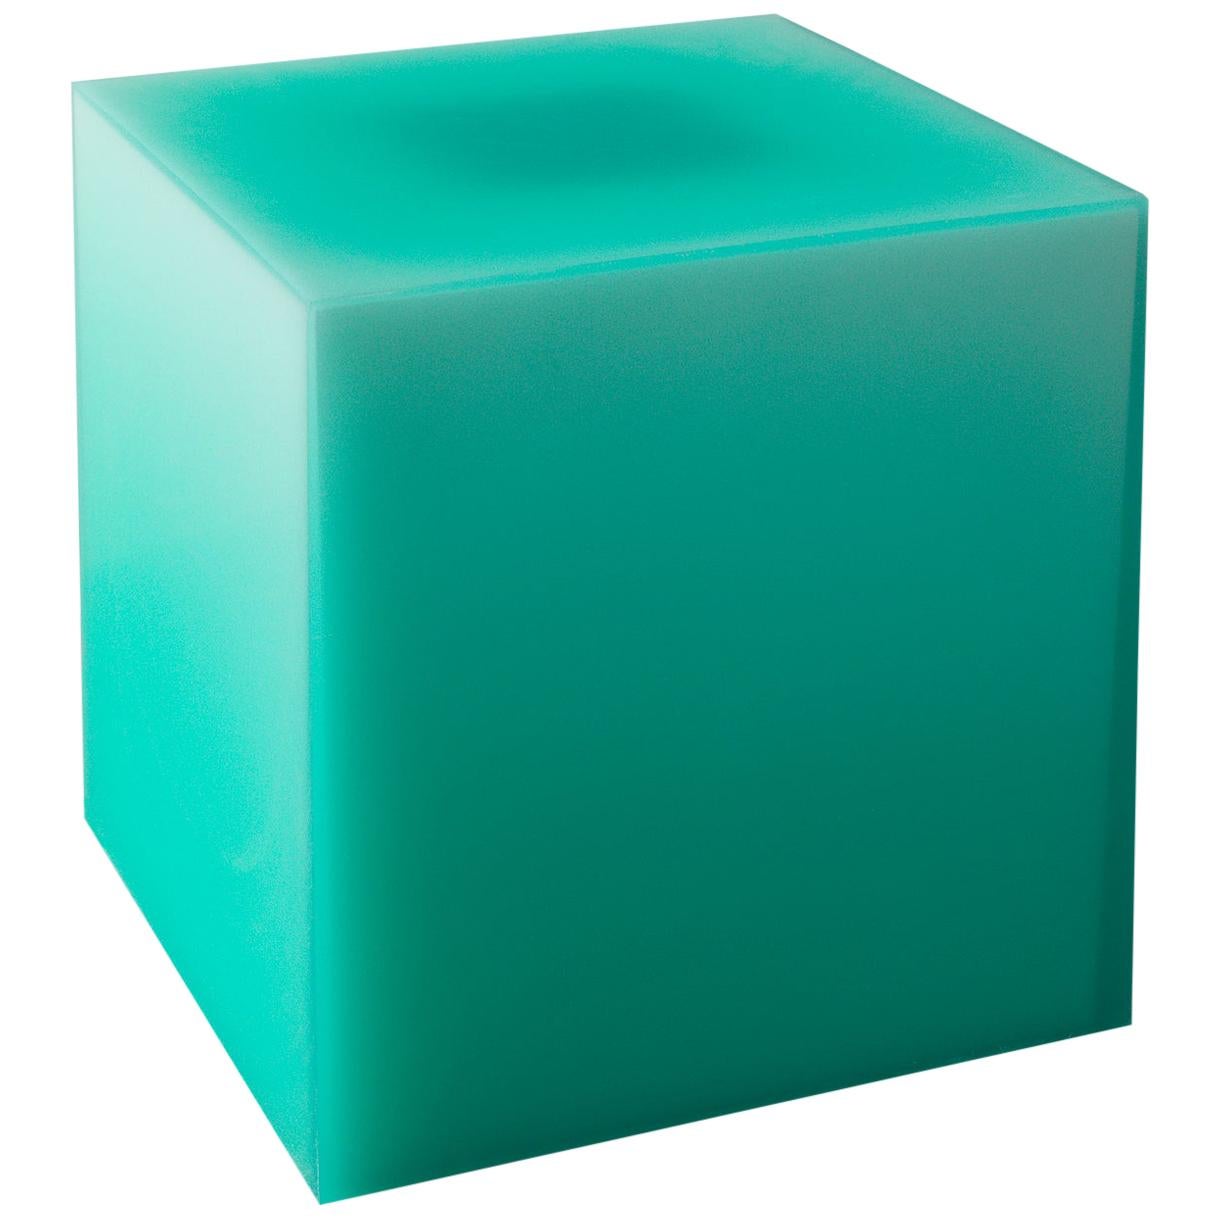 Table d'appoint/tabouret Pool Cube en résine  Turquoise par Facture REP par Tuleste Factory